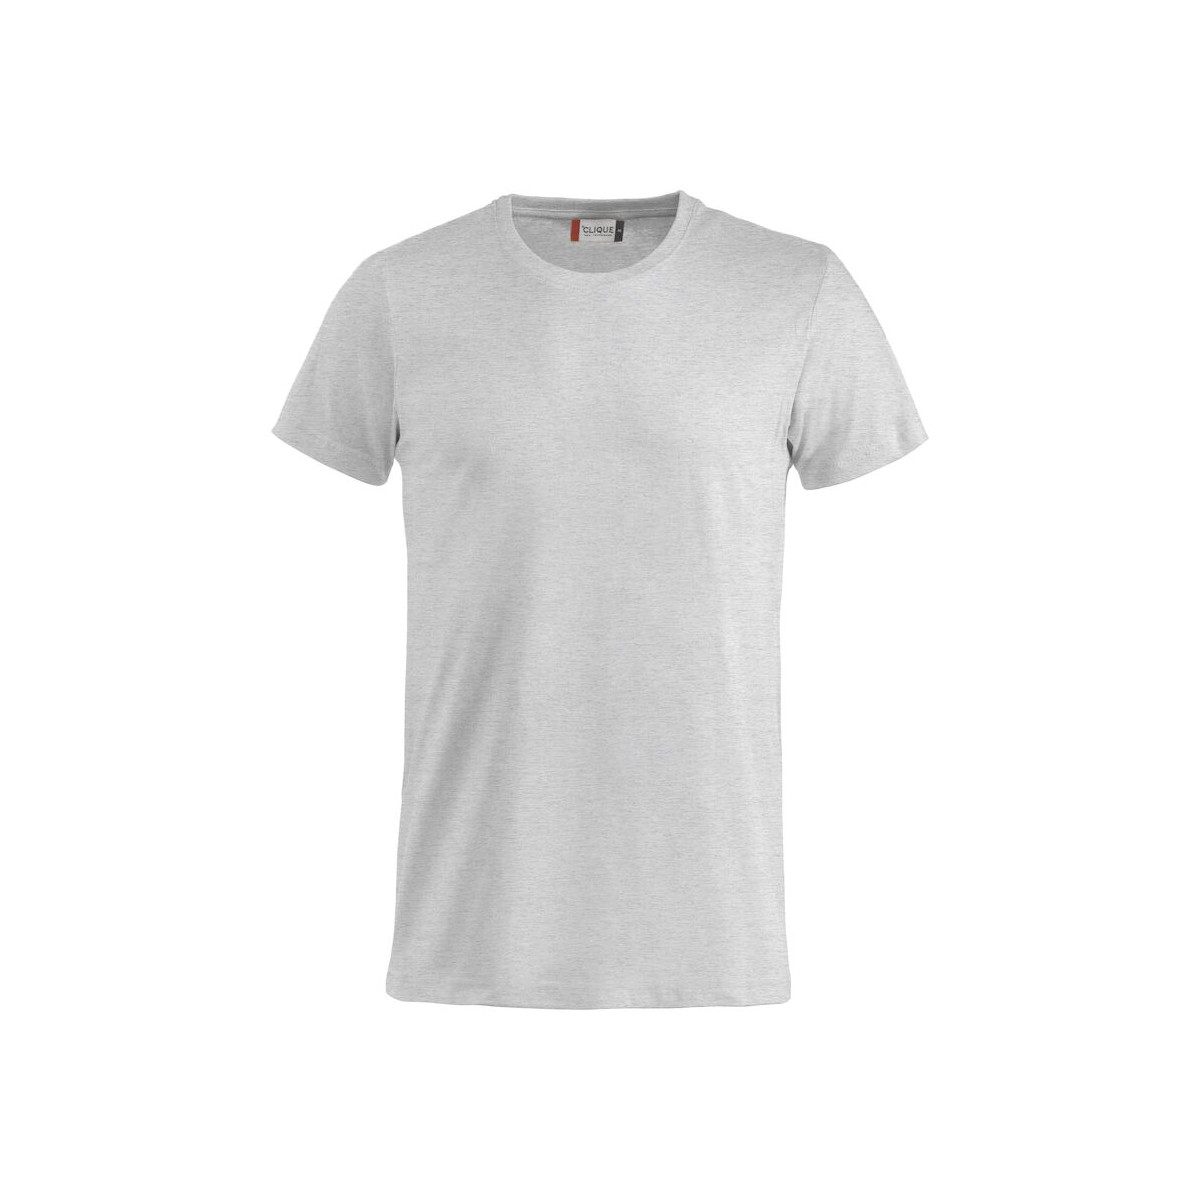 T-shirt 100% coton - CLIQUE - Coupe homme - Couleur gris cendré - Personnalisable en petite quantité